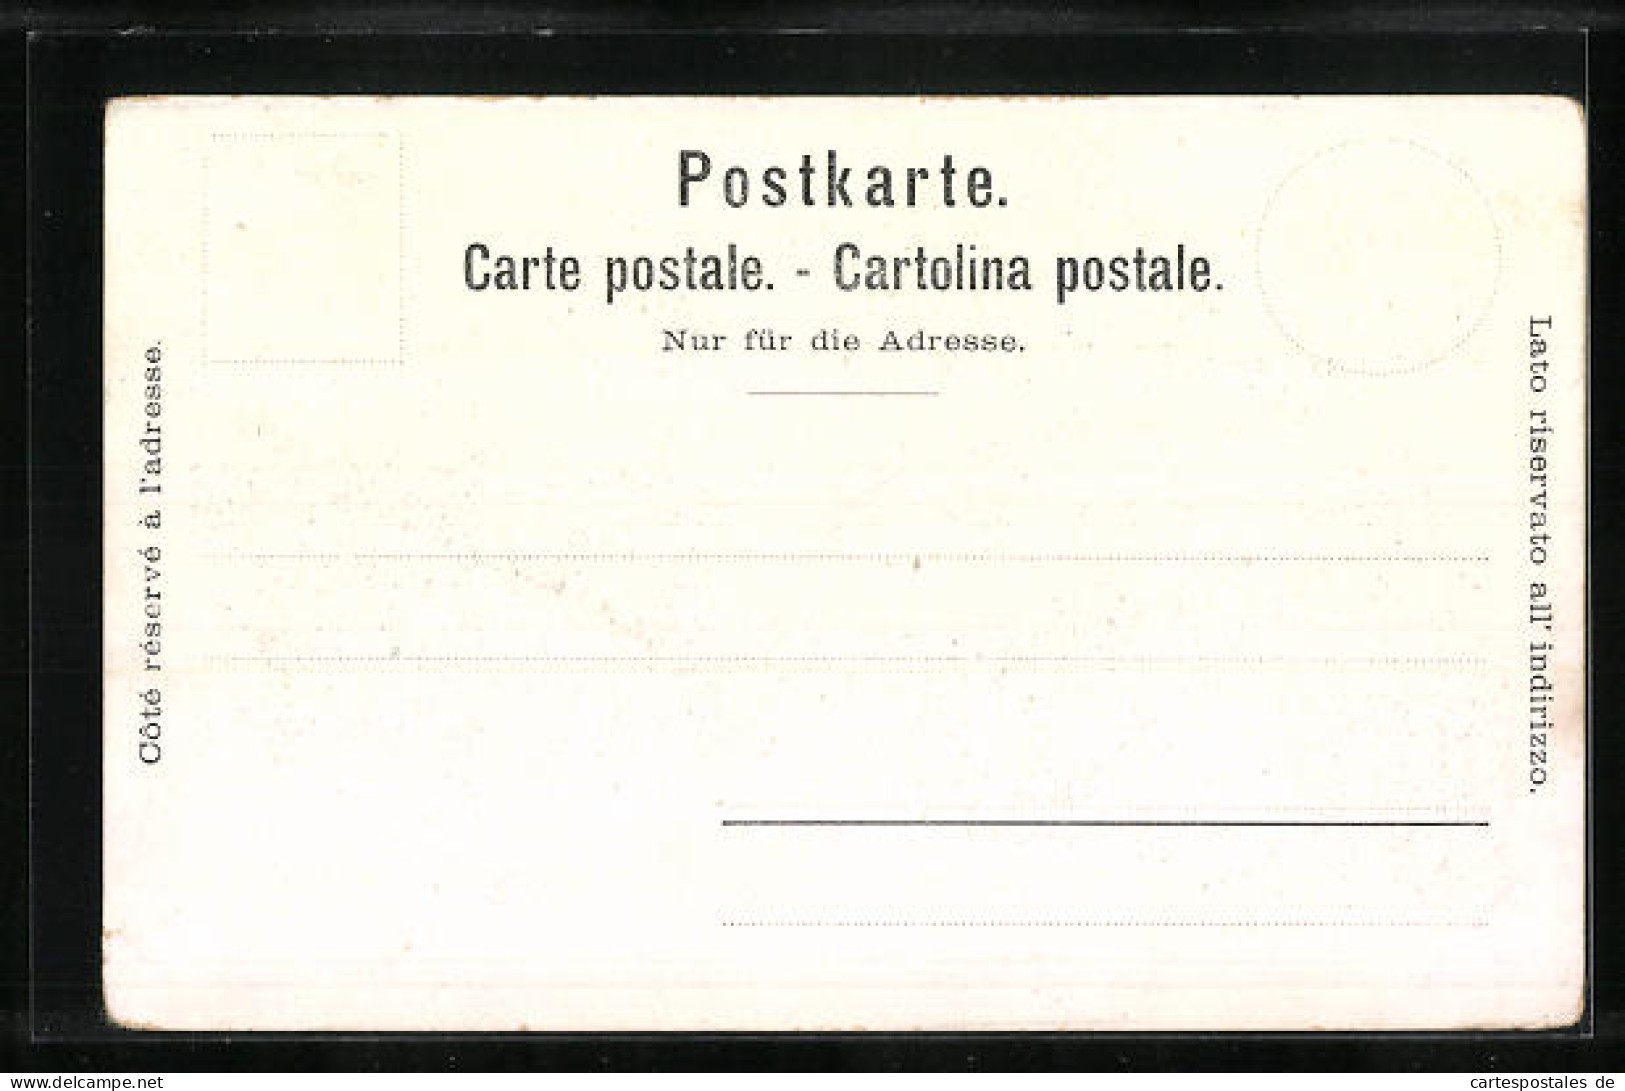 AK Vevey, Souvenir De L'Exposition 1901, Ausstellungsgelände Und Seeblick  - Exhibitions